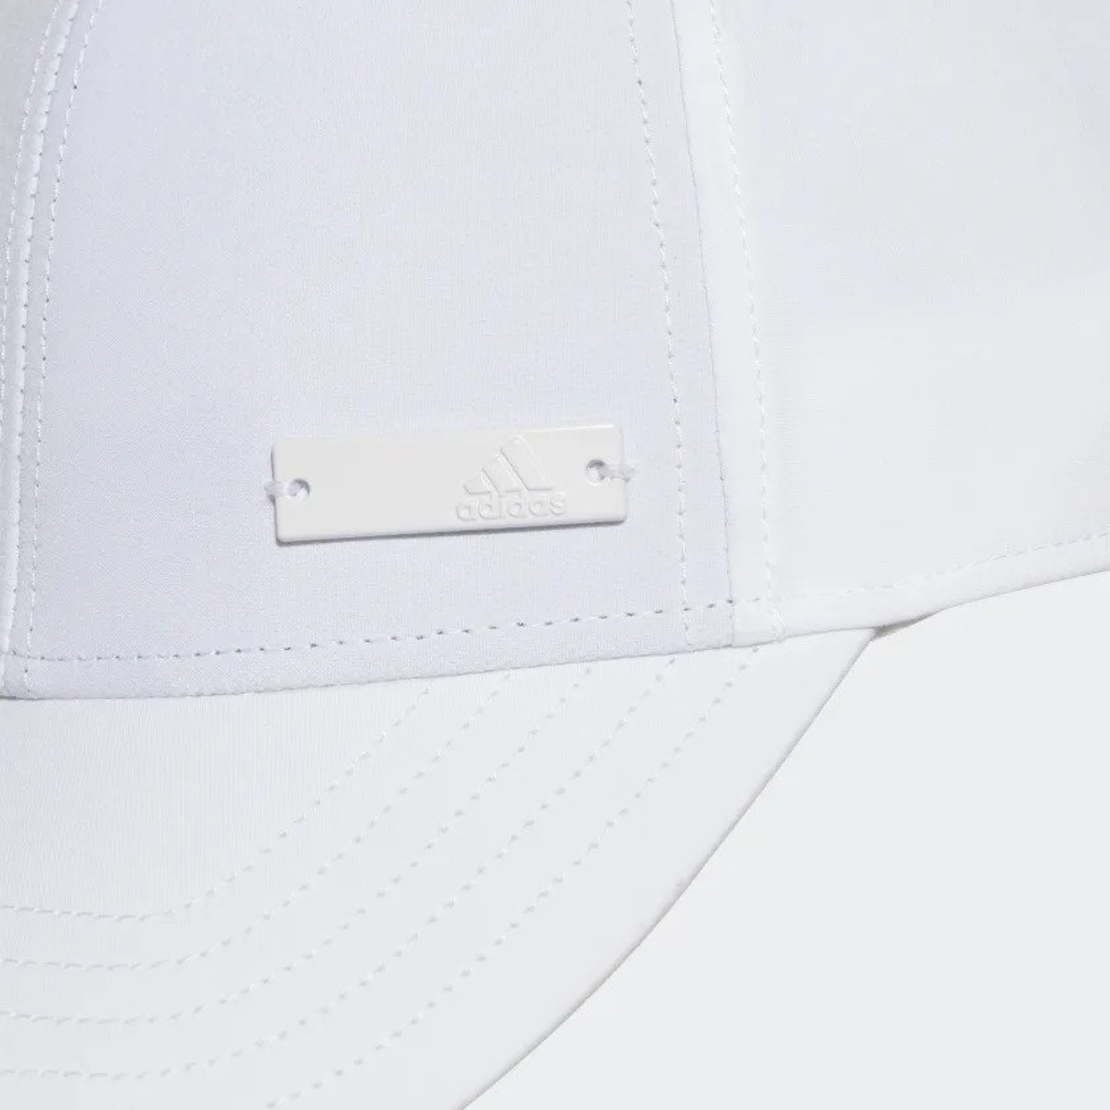 כובע אדידס | Adidas Metal Badge Cap